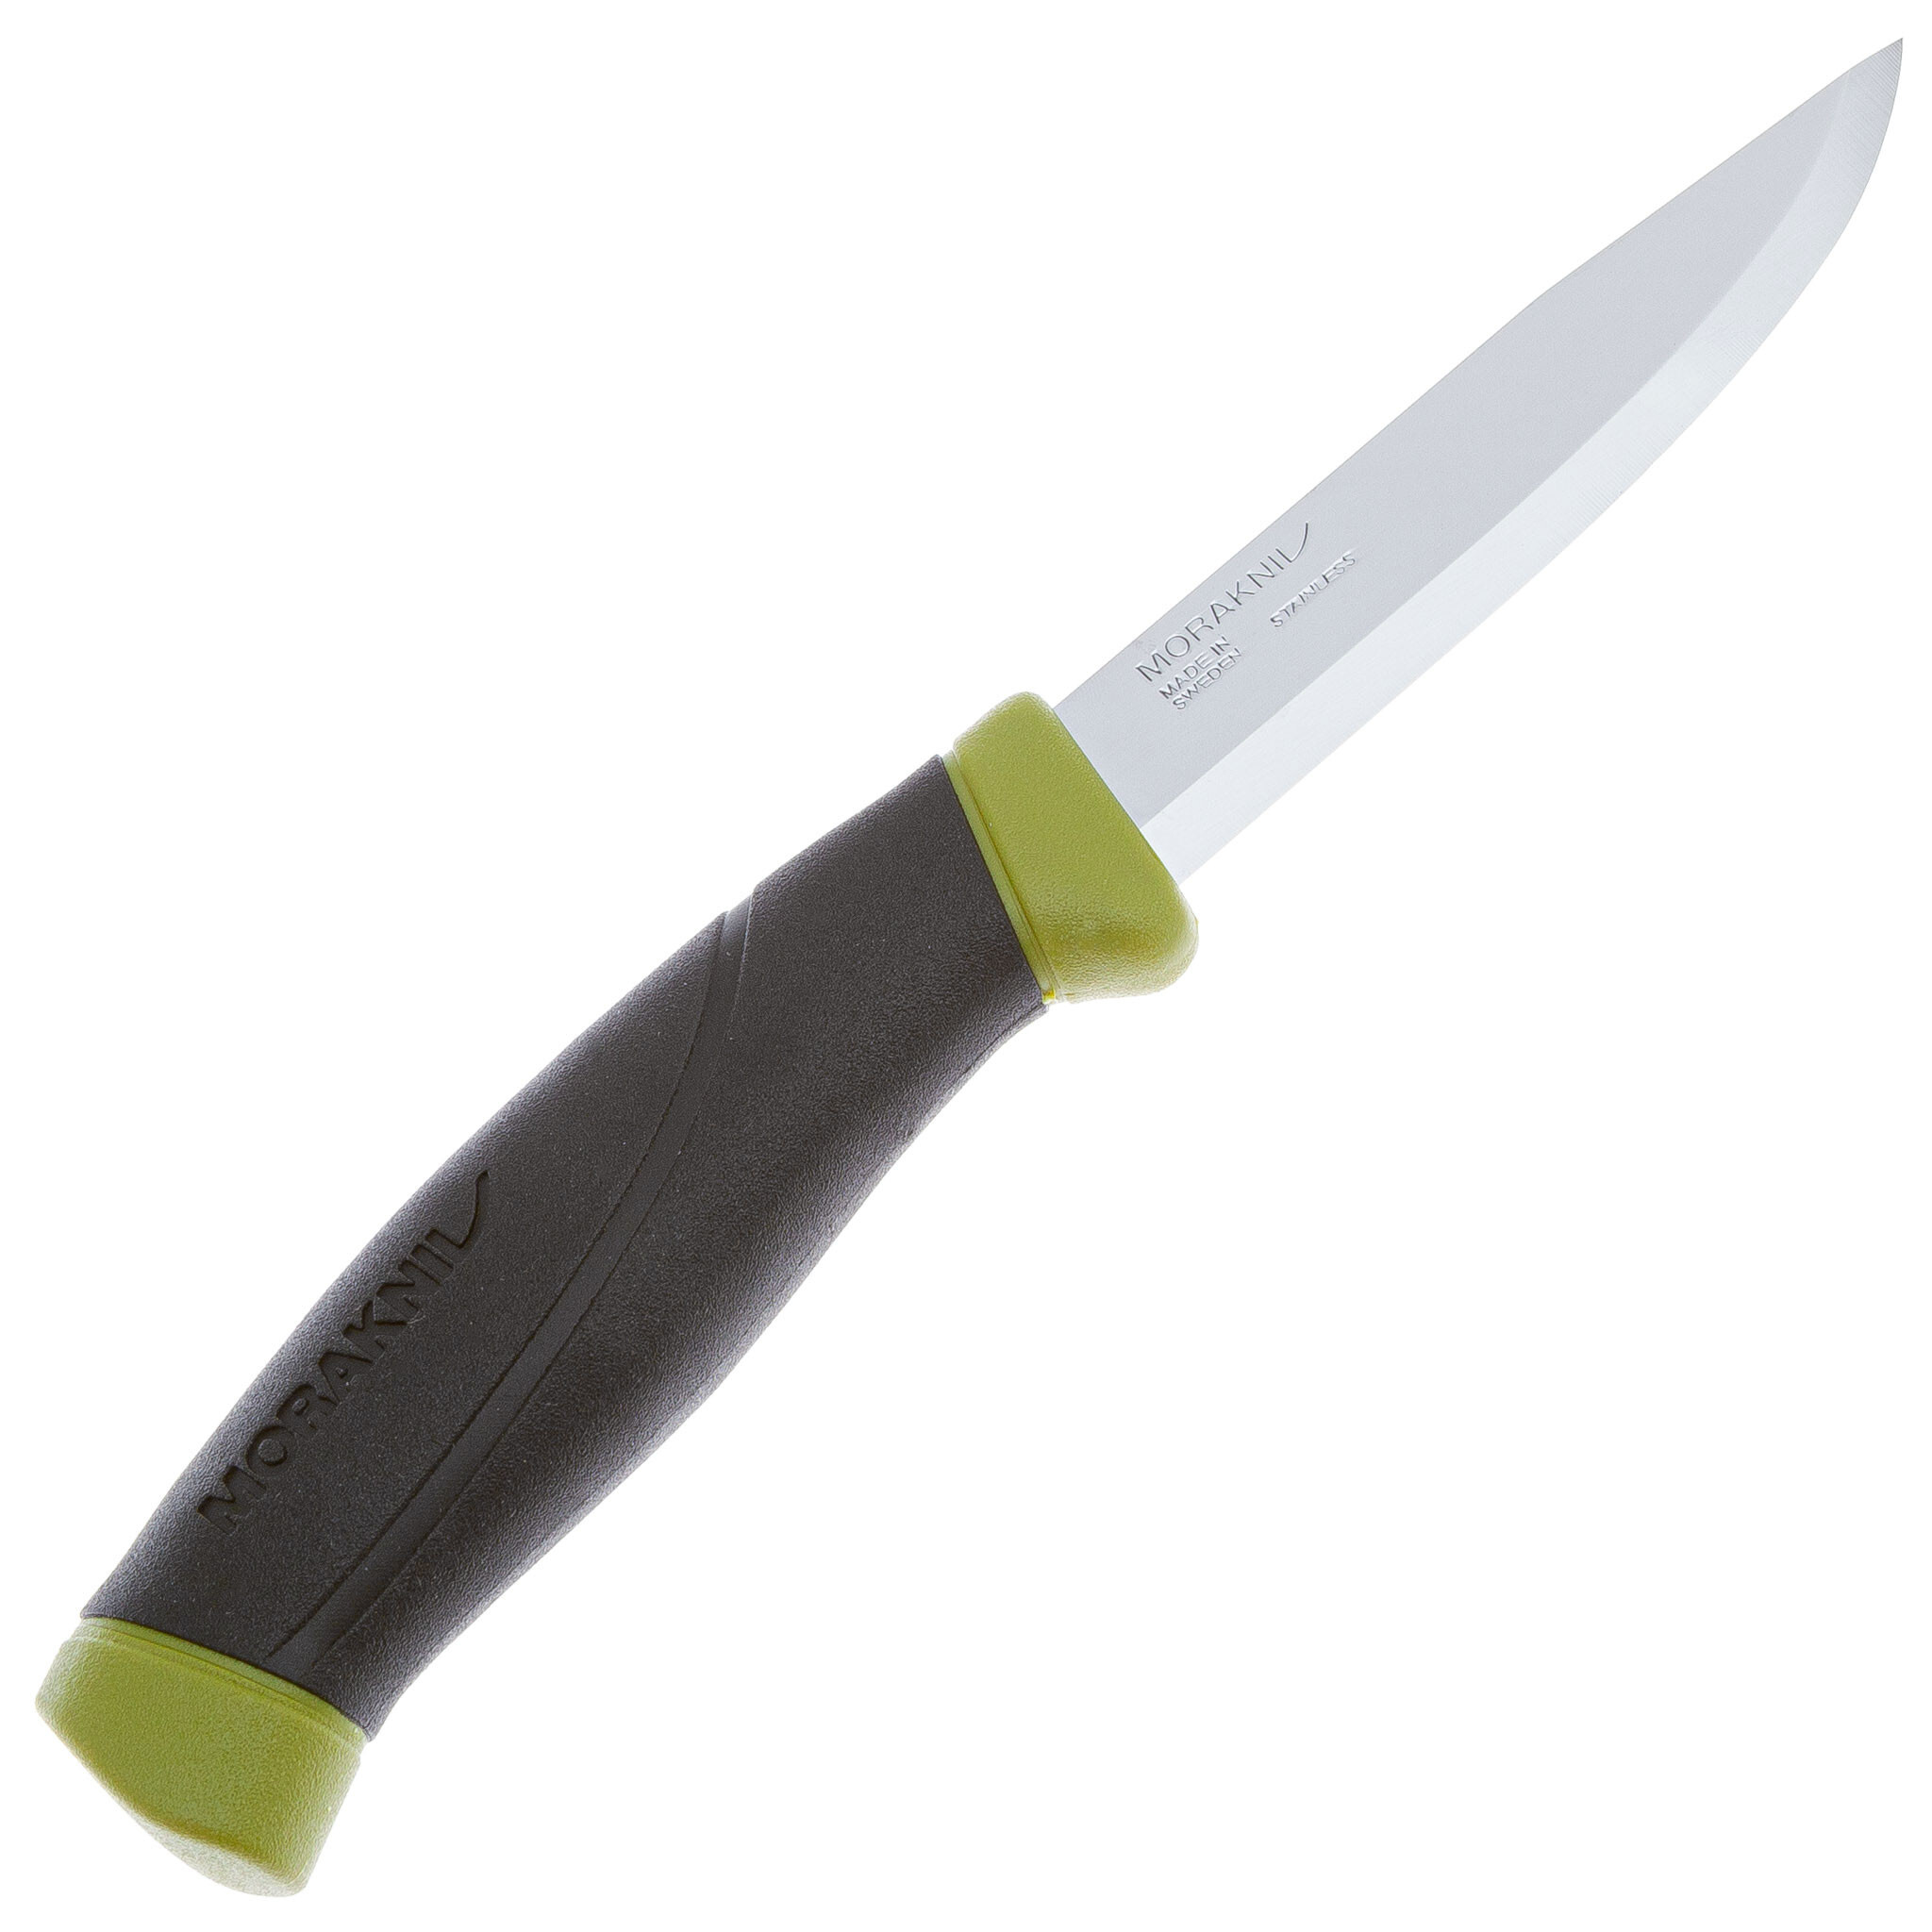 Нож с фиксированным лезвием Morakniv Companion, сталь Sandvik 12C27, рукоять резина, olive green - фото 2